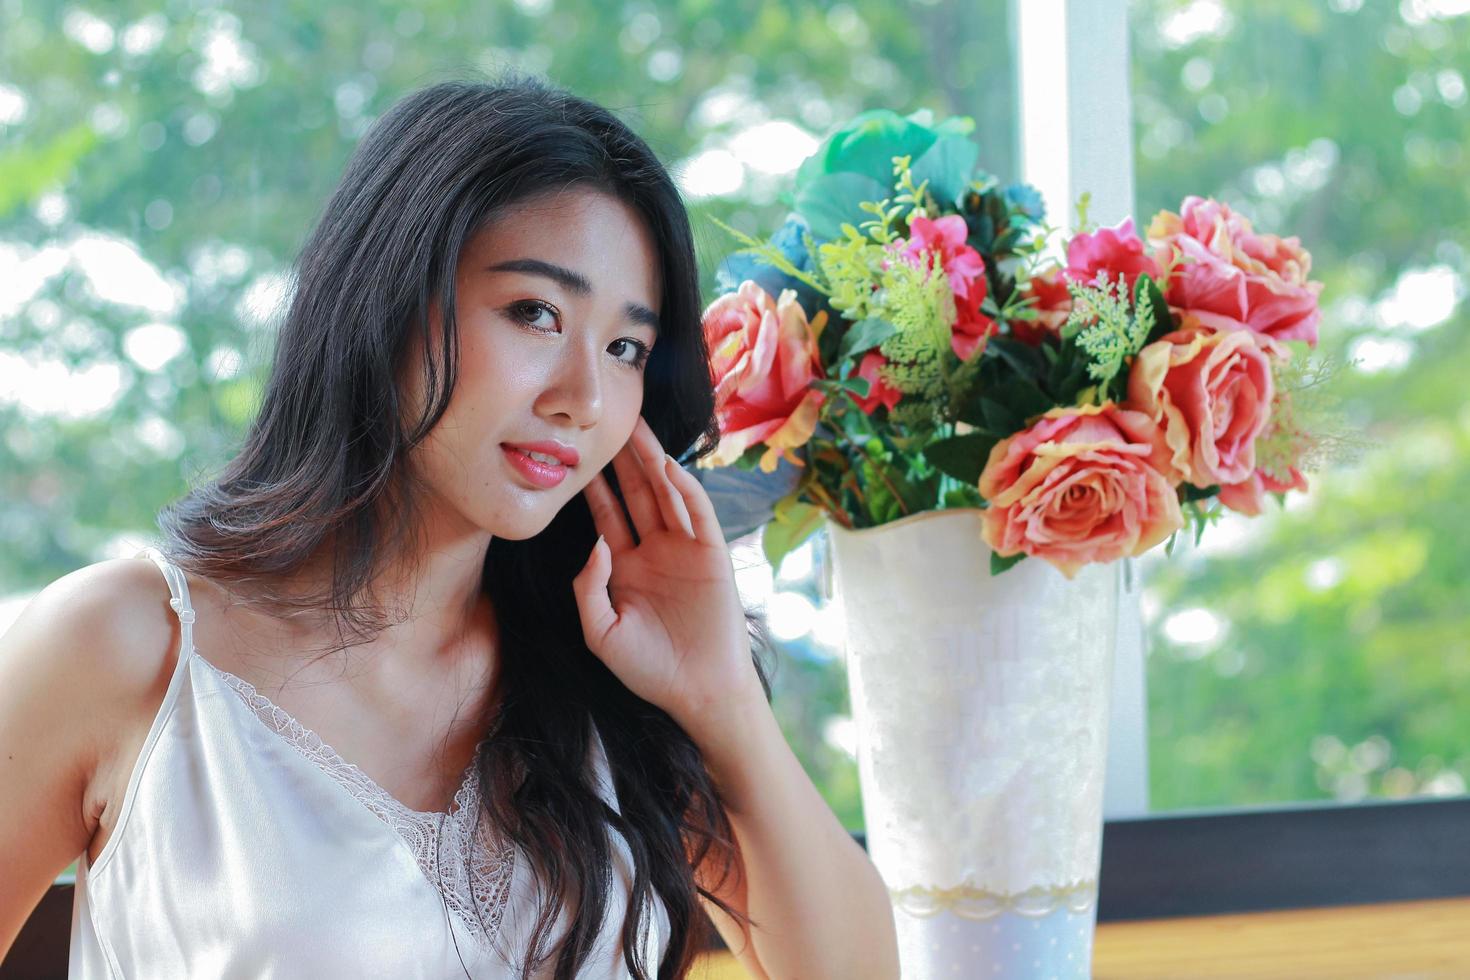 Femme asiatique assise à côté d'un vase de fleurs photo